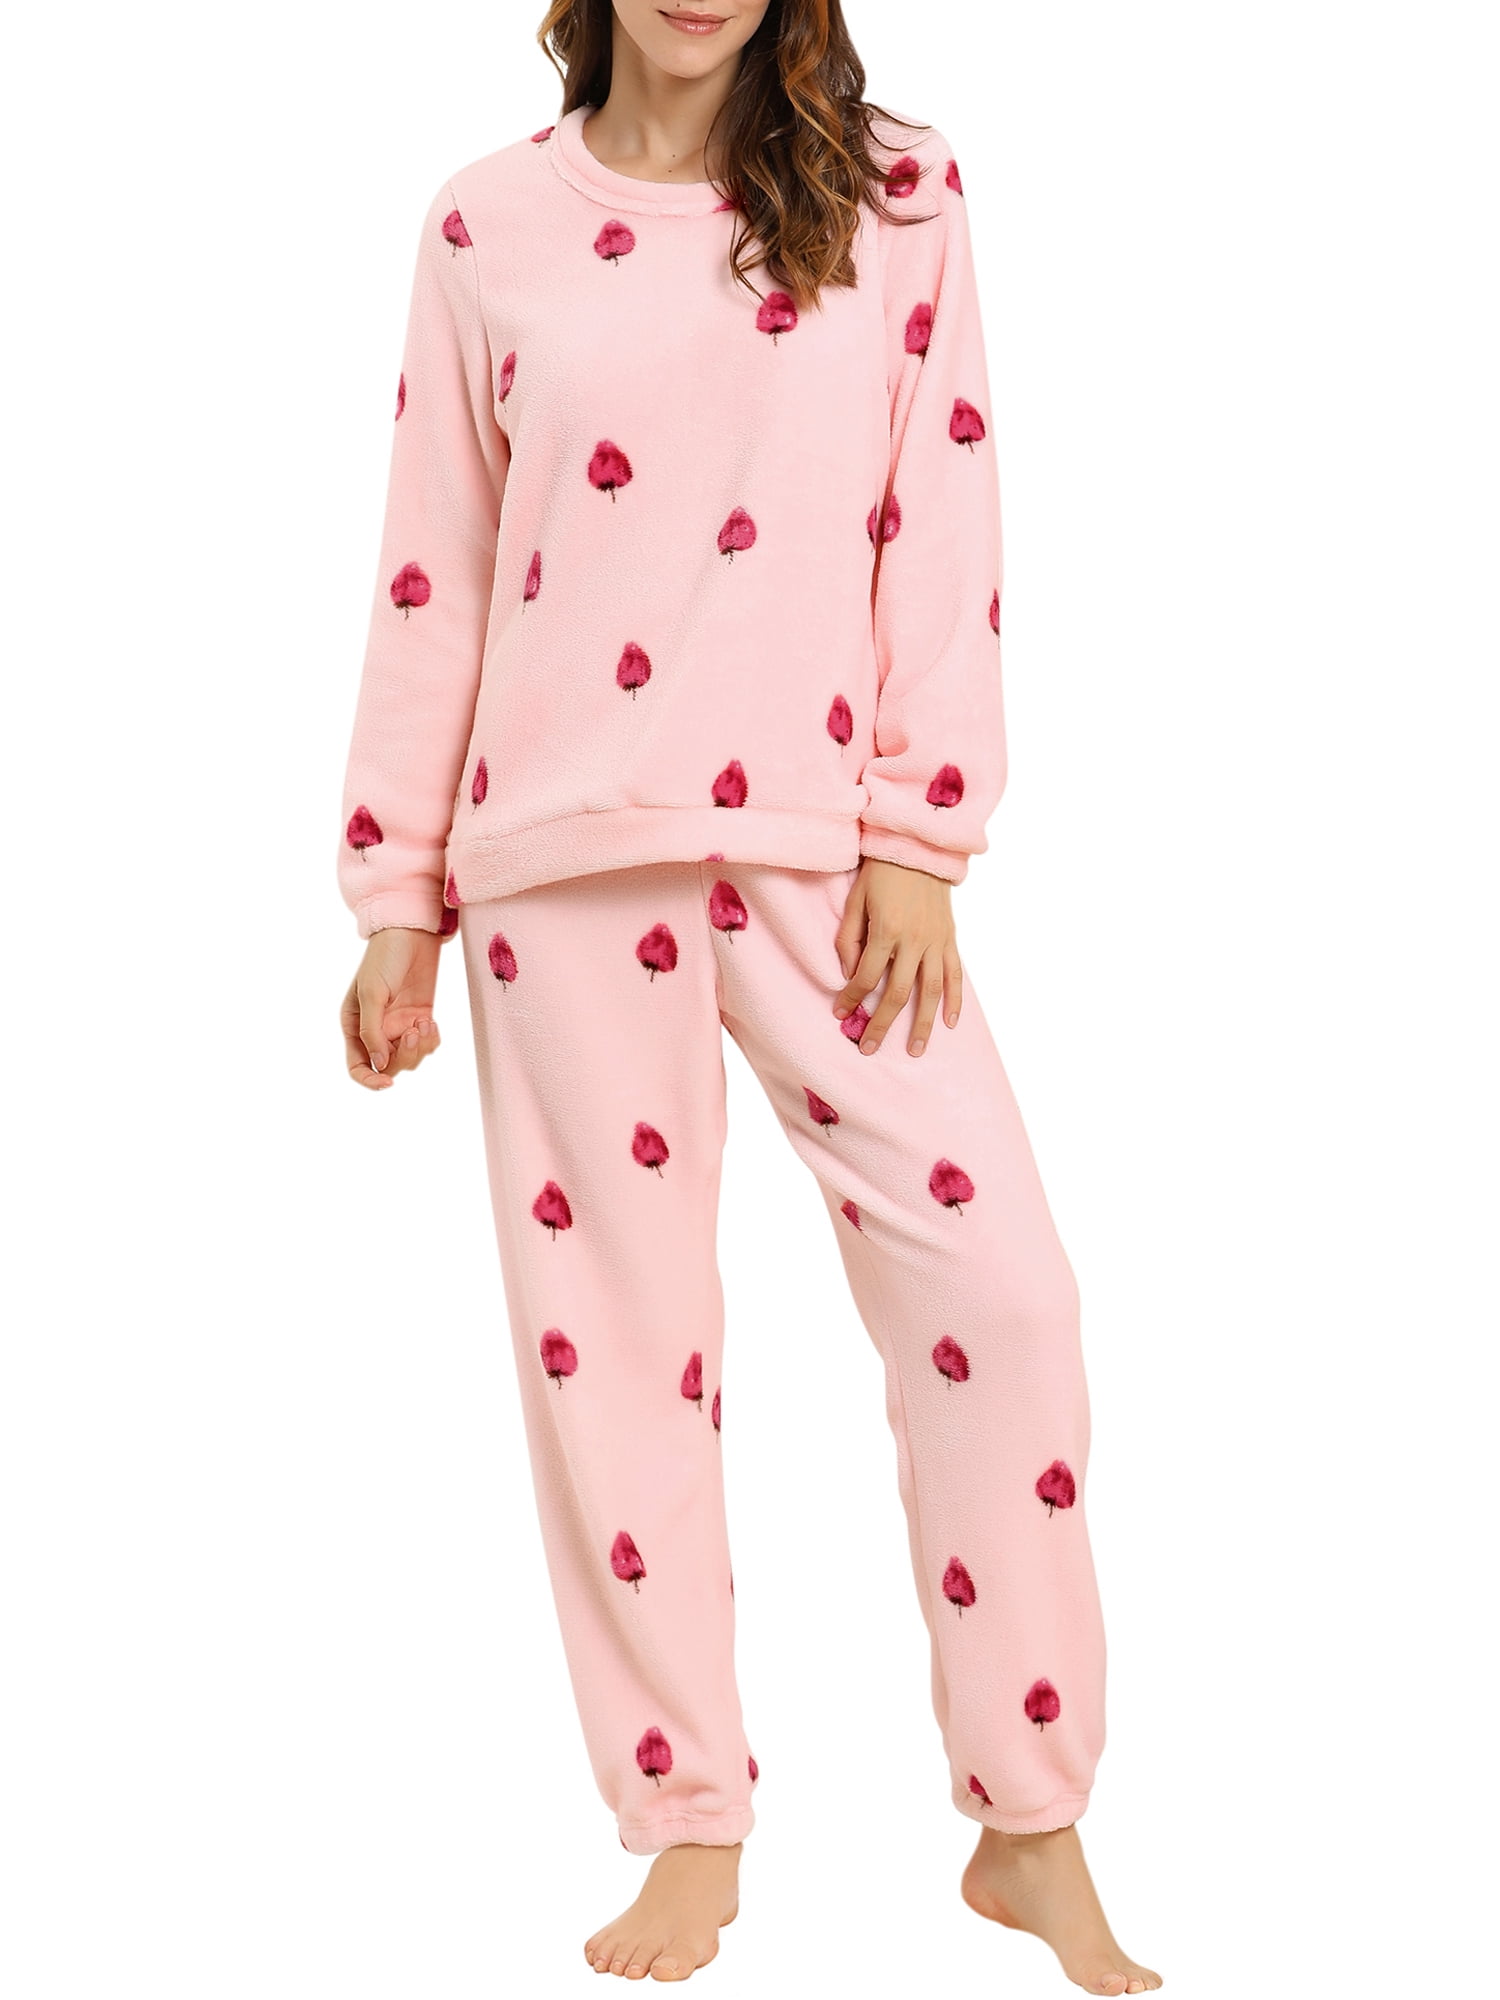 Unique Bargains Women's Winter Loungewear Sleepwear Flannel Pajama Set